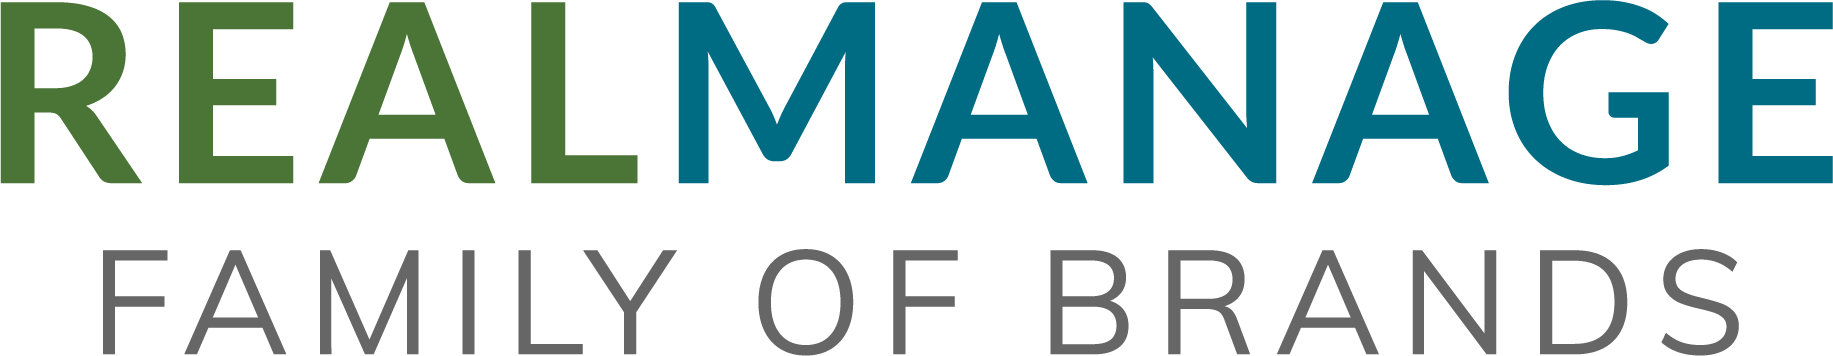 RealManage Family of Brands - Colorado logo